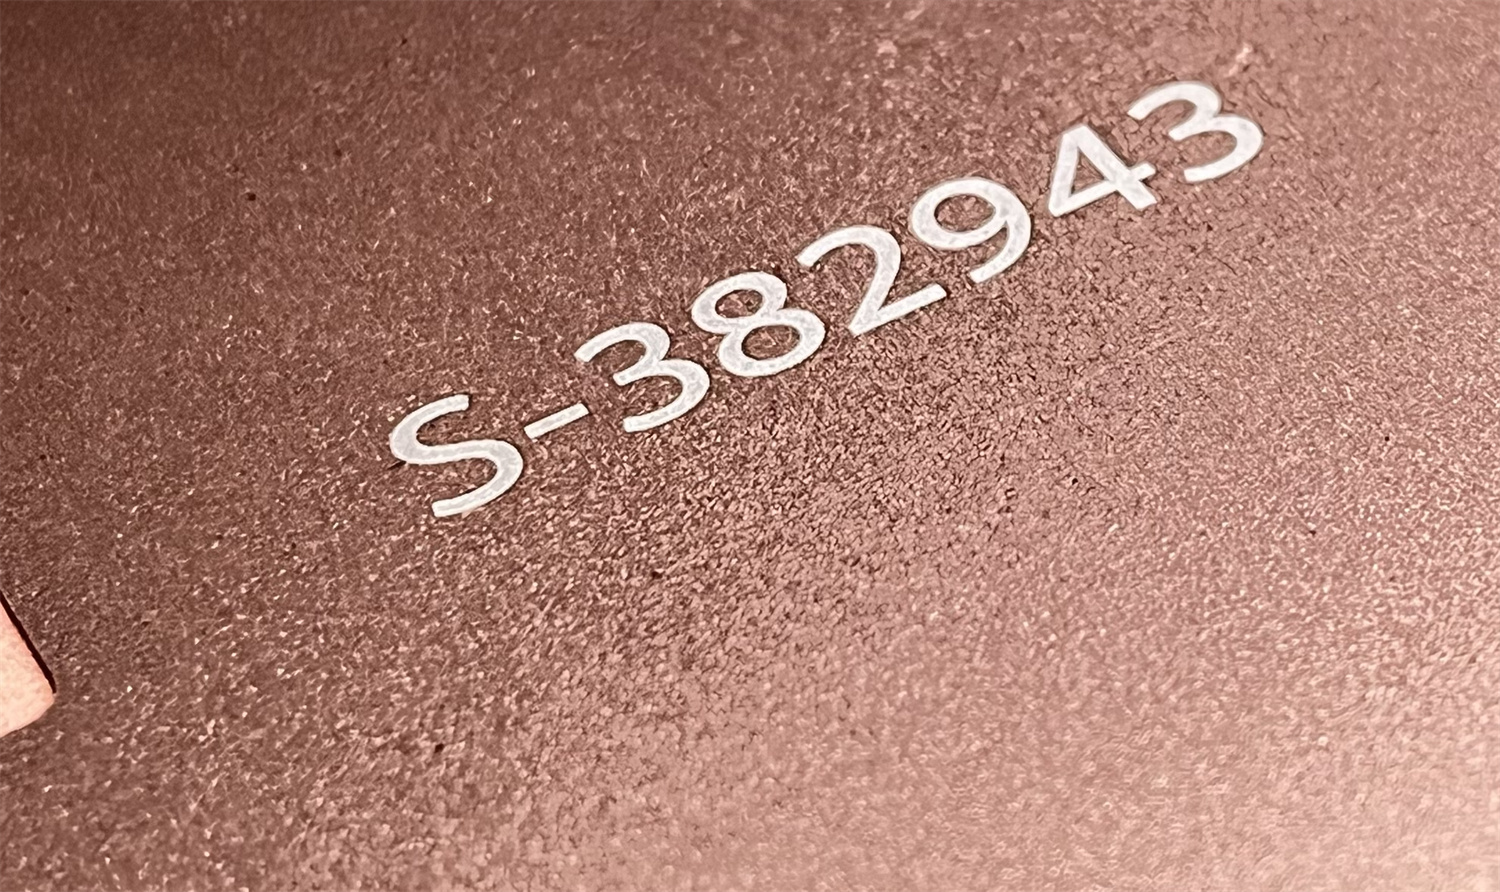 laser engraved number on rose gold